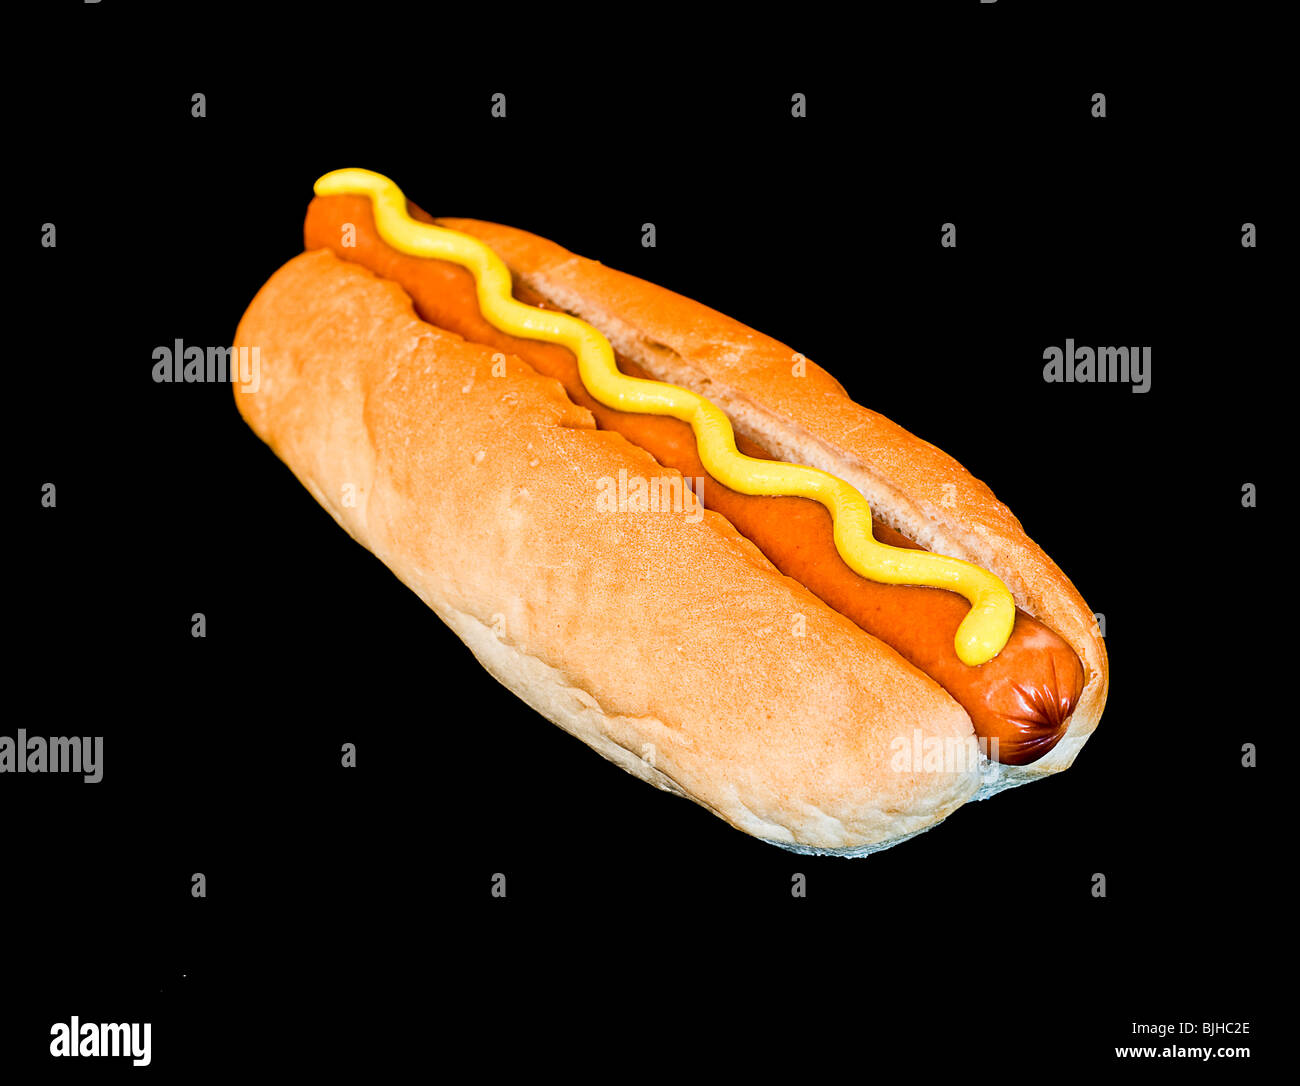 Hot dog Stock Photo